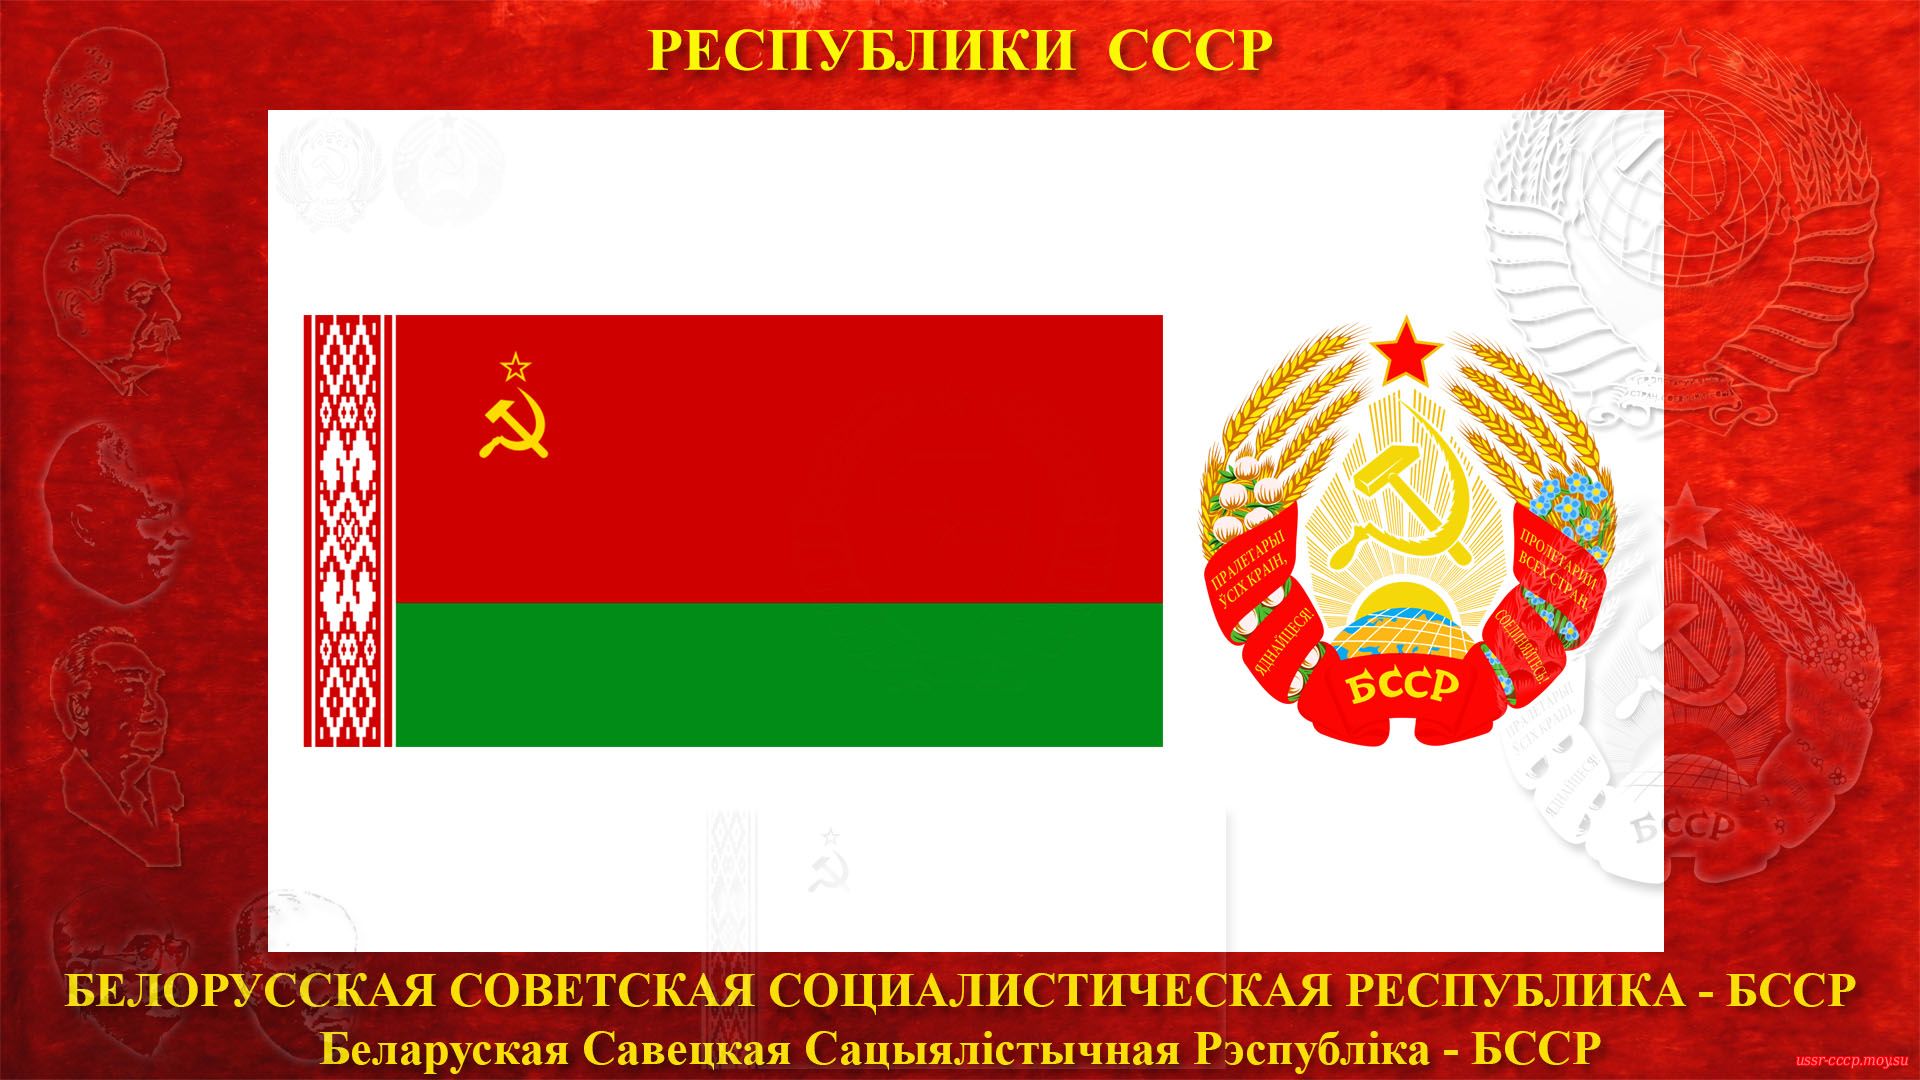 БССР — Белорусская Советская Социалистическая Республика (30.12.1922 — де-юре)